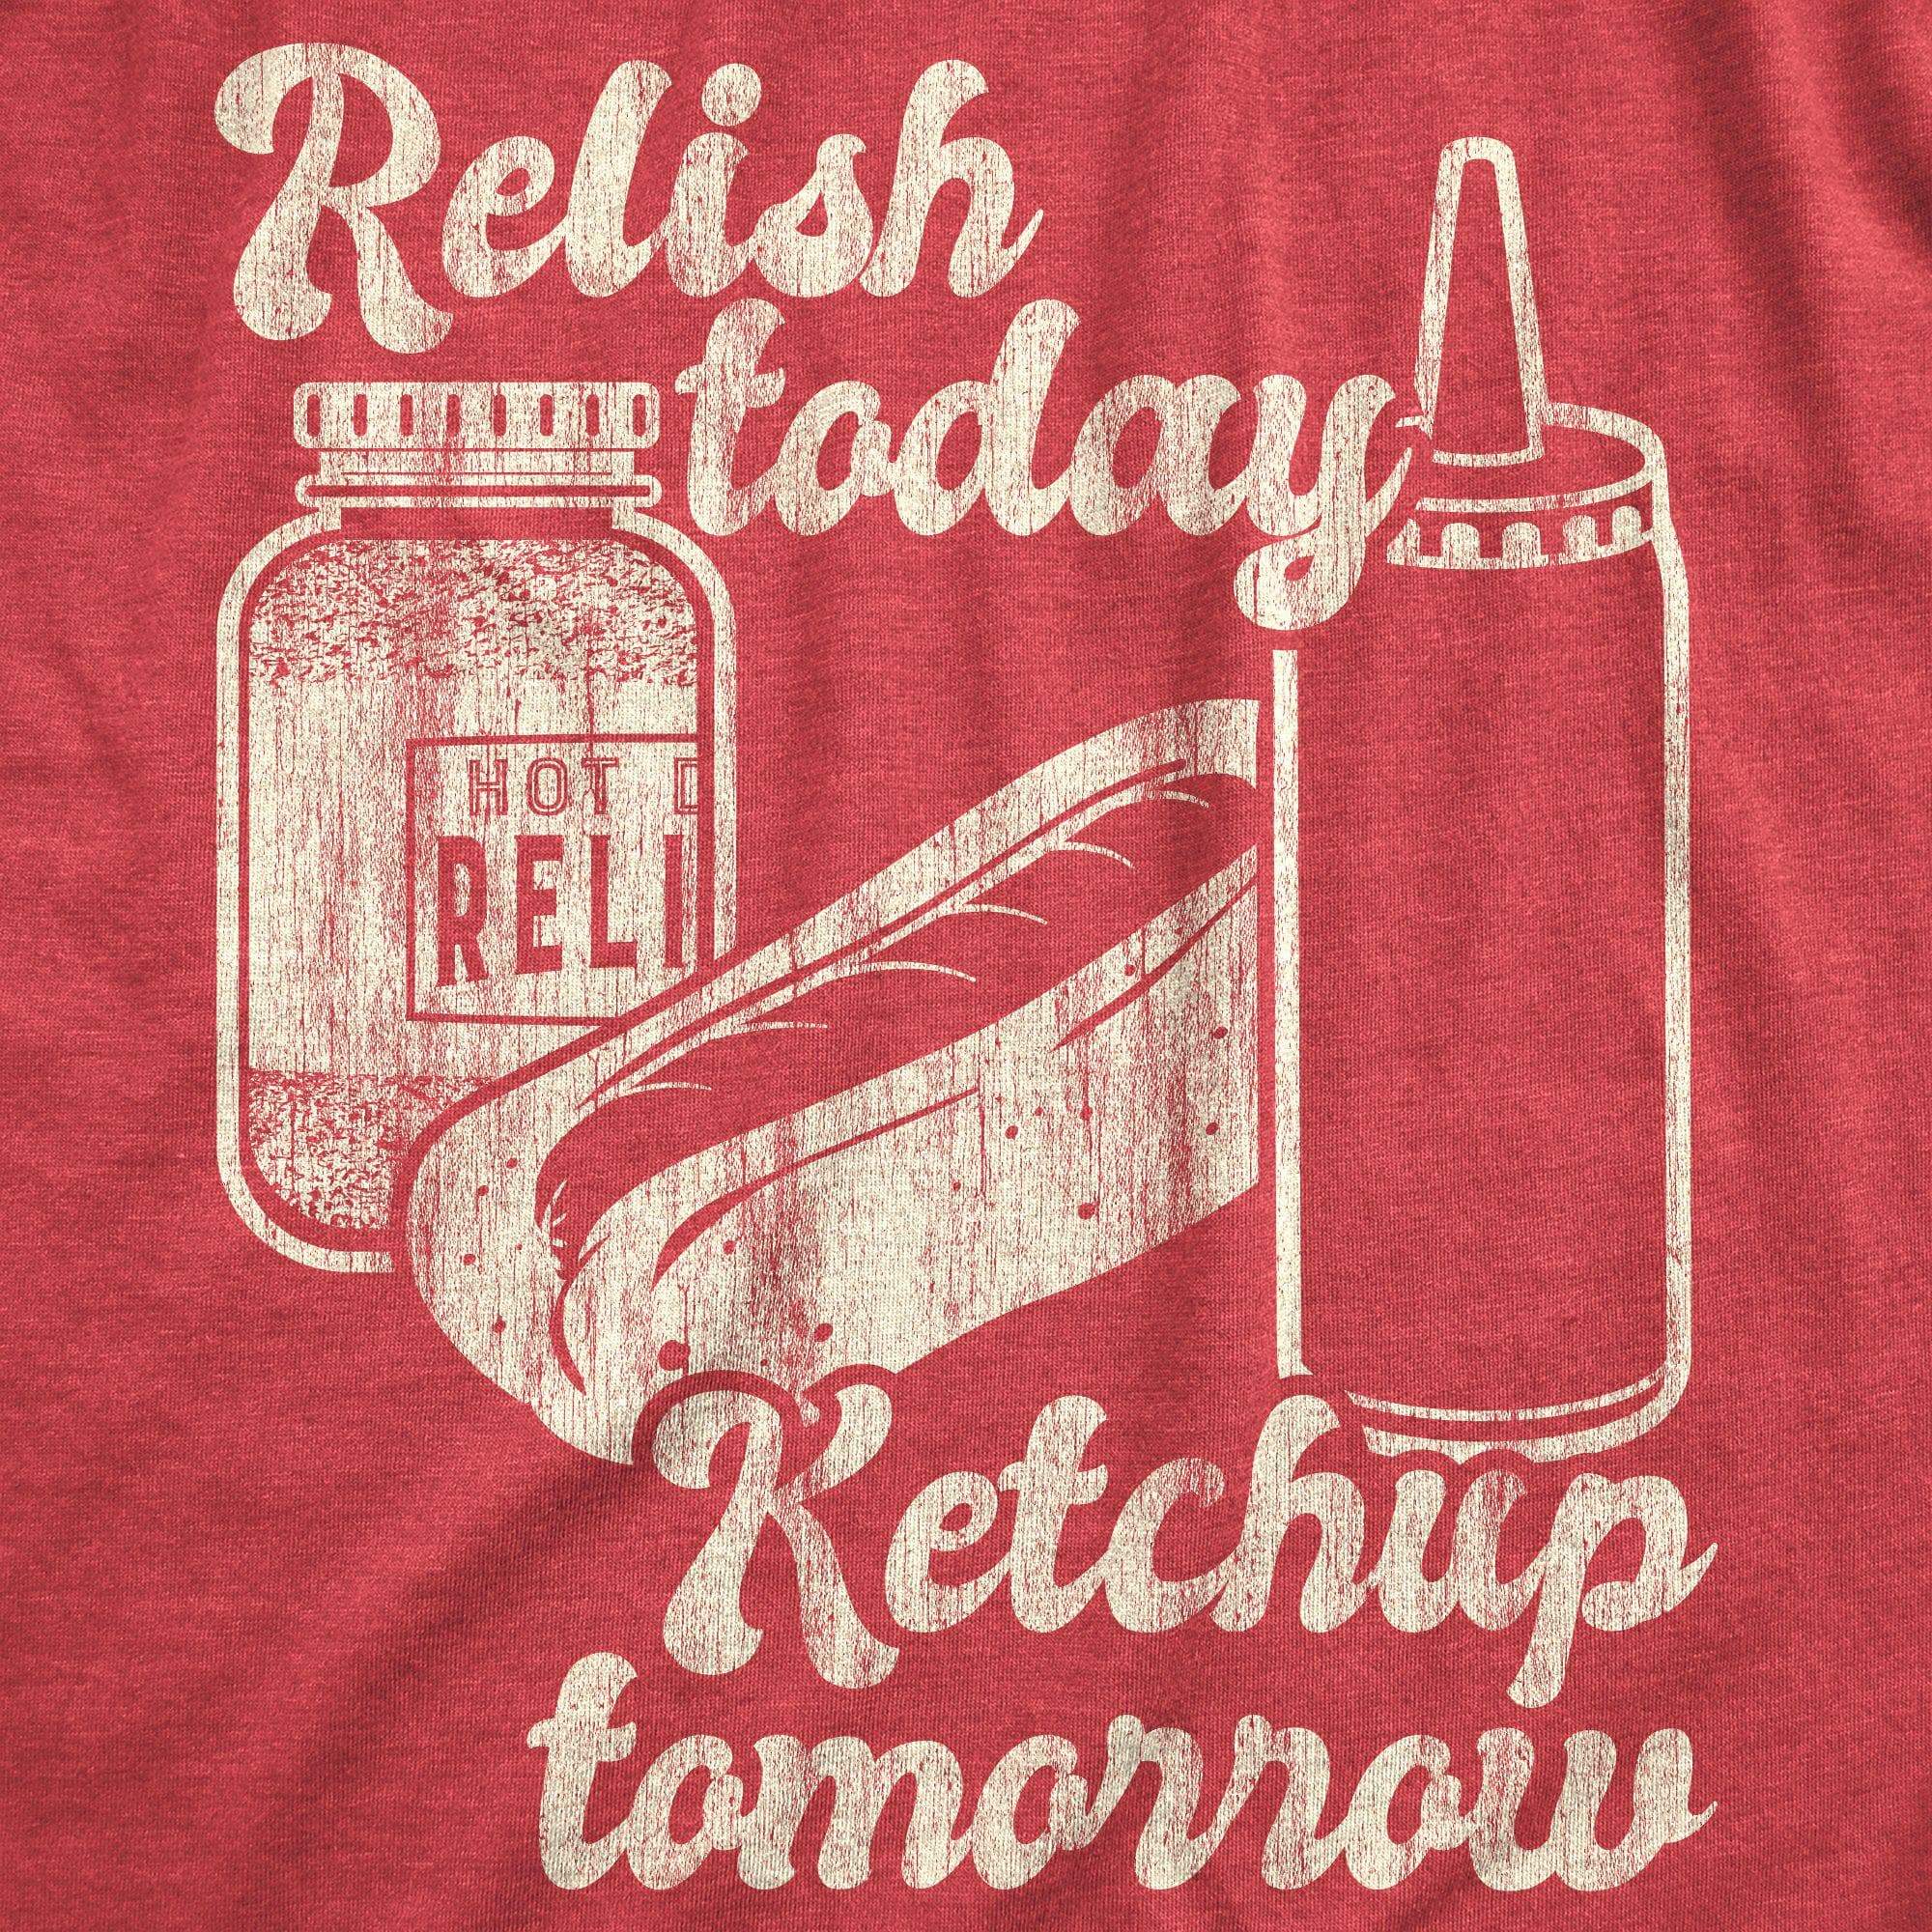 Relish Today Ketchup Tomorrow Men's Tshirt - Crazy Dog T-Shirts